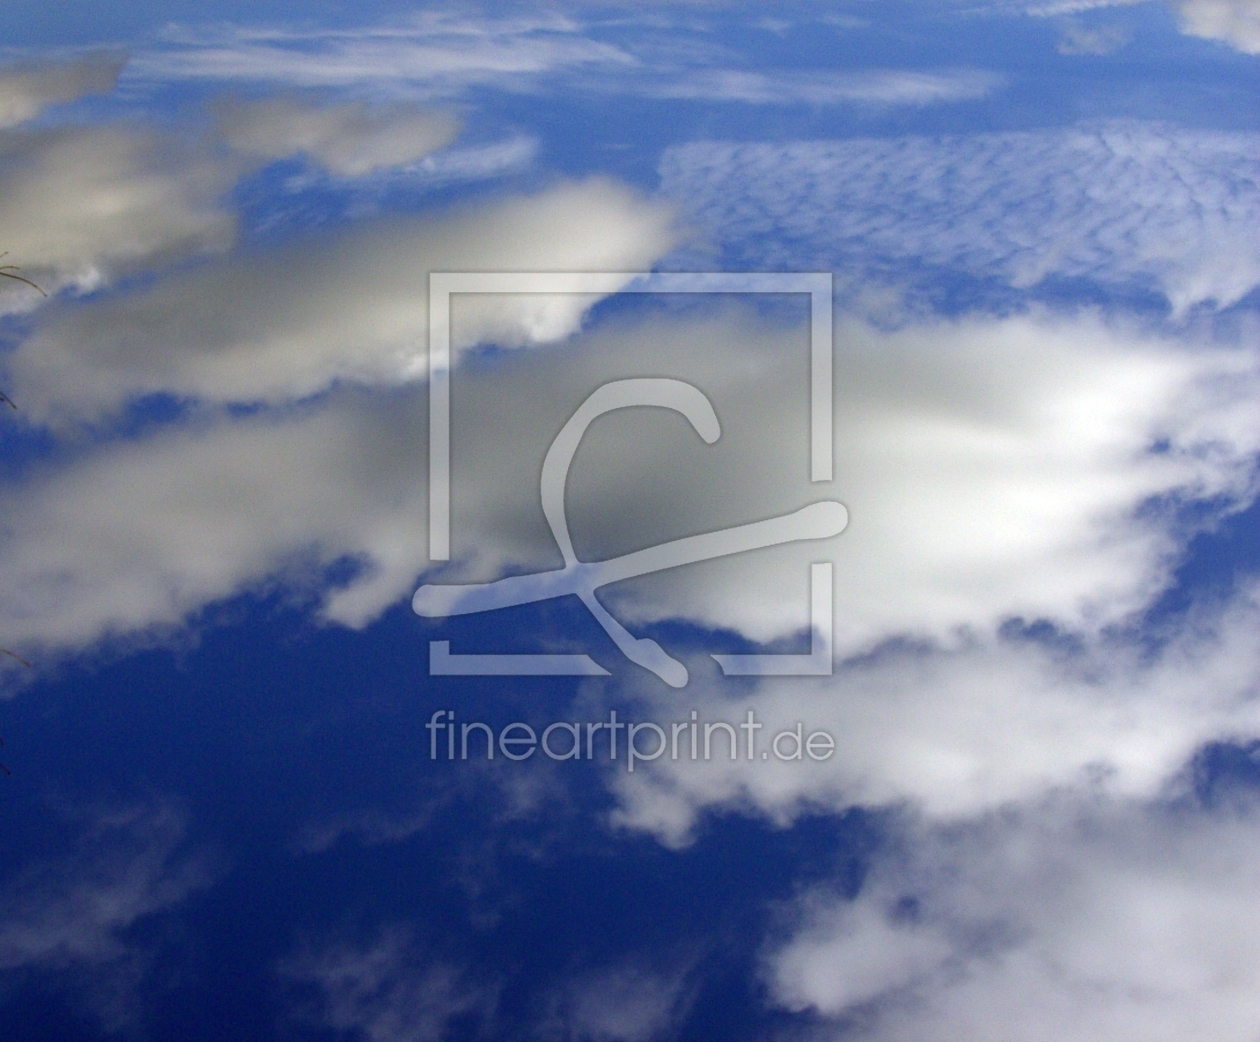 Bild-Nr.: 9989579 über den wolken erstellt von andreas291